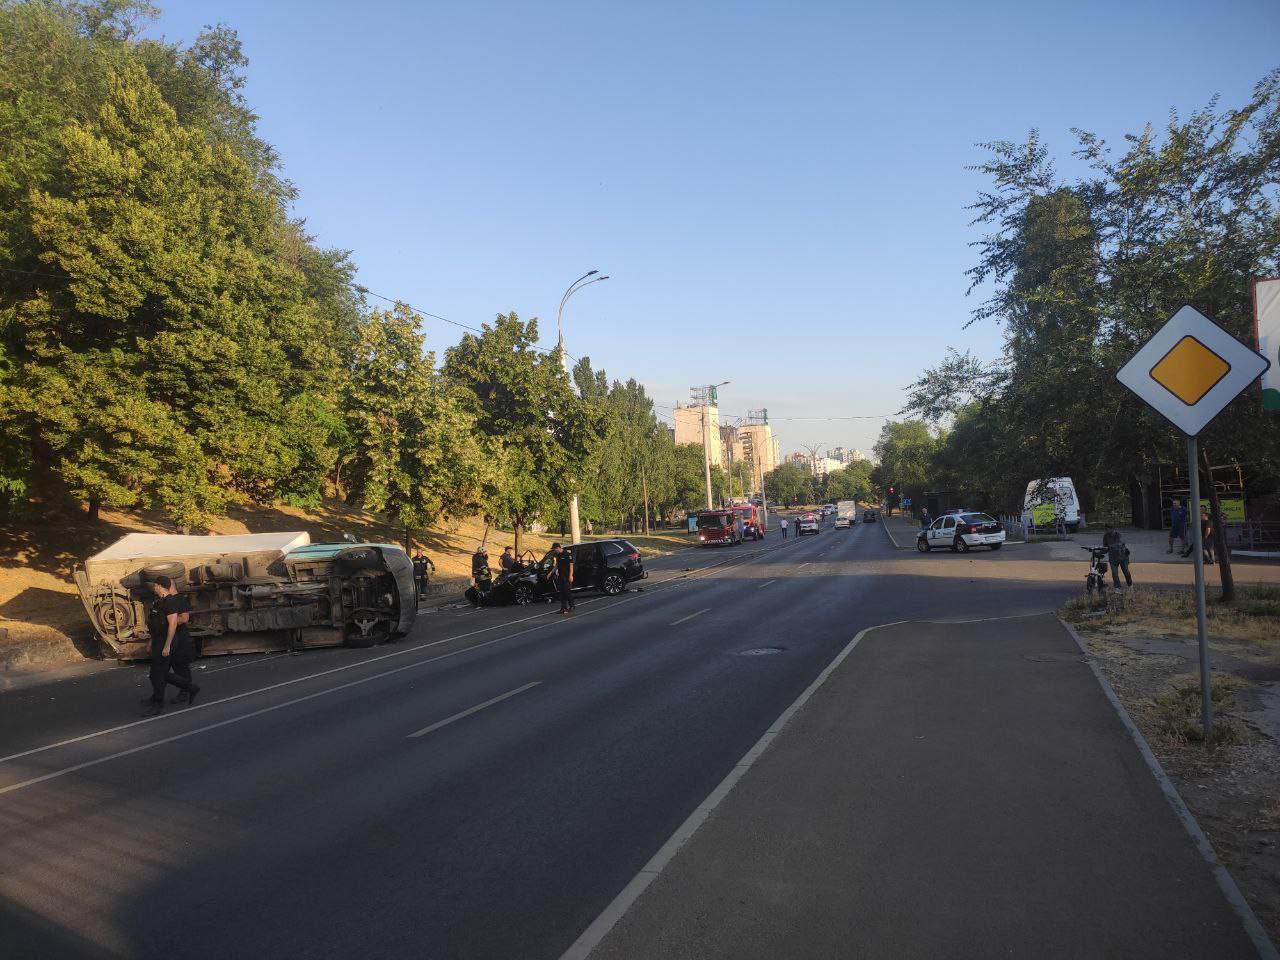 FOTO Un minor a urcat la volanul unei mașini și s-a izbit într-un camion, pe o stradă din Chișinău 